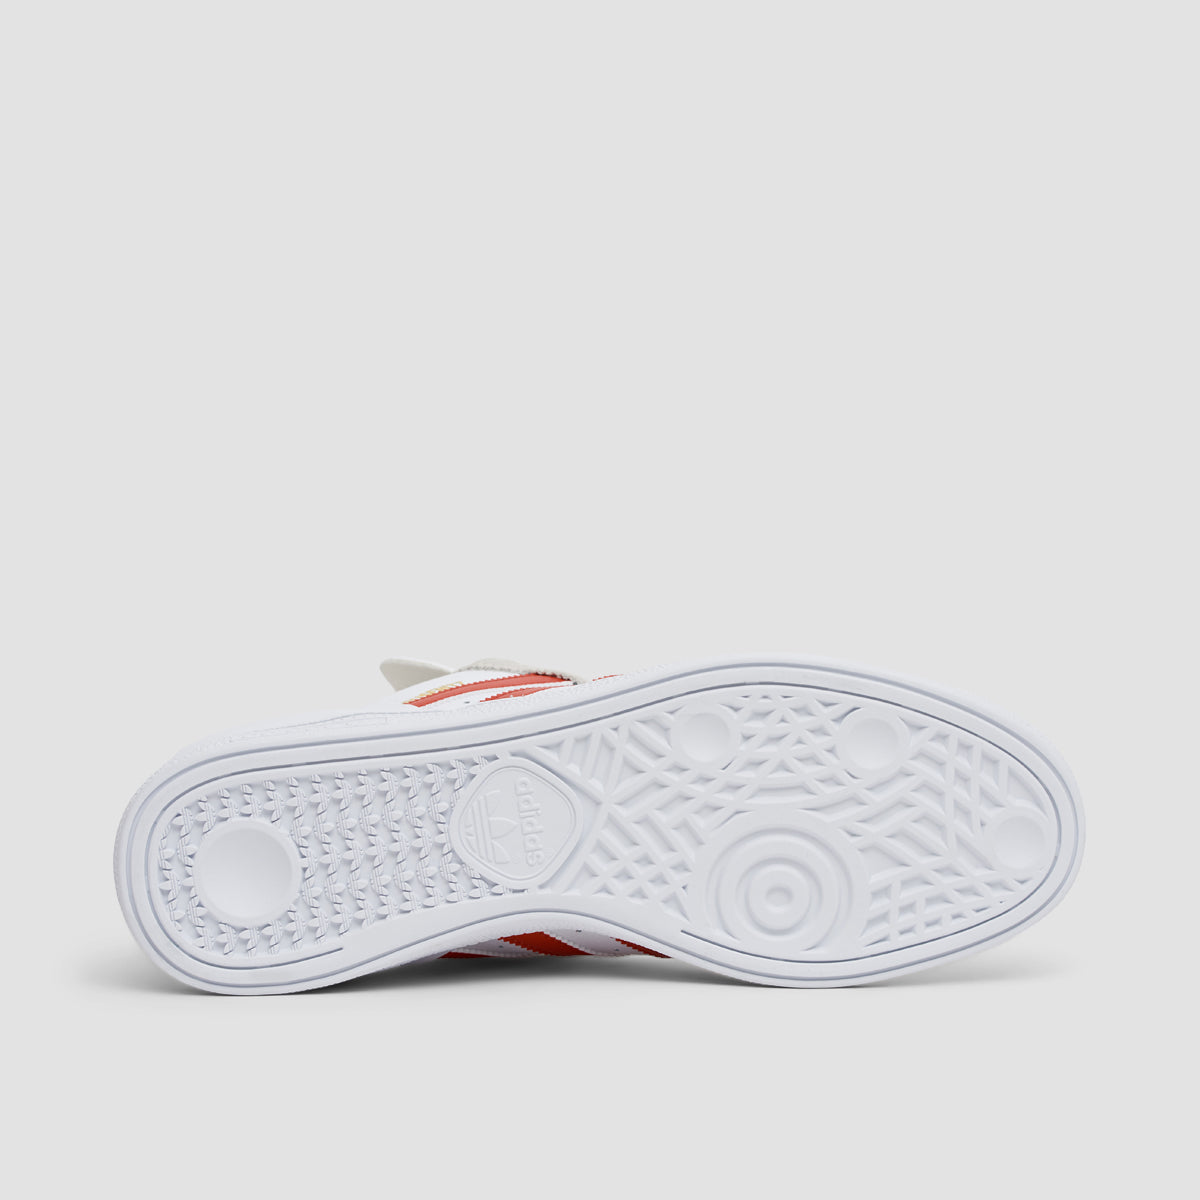 adidas Busenitz Shoes - Footwear White/Bet Scarlet/Gold Metallic